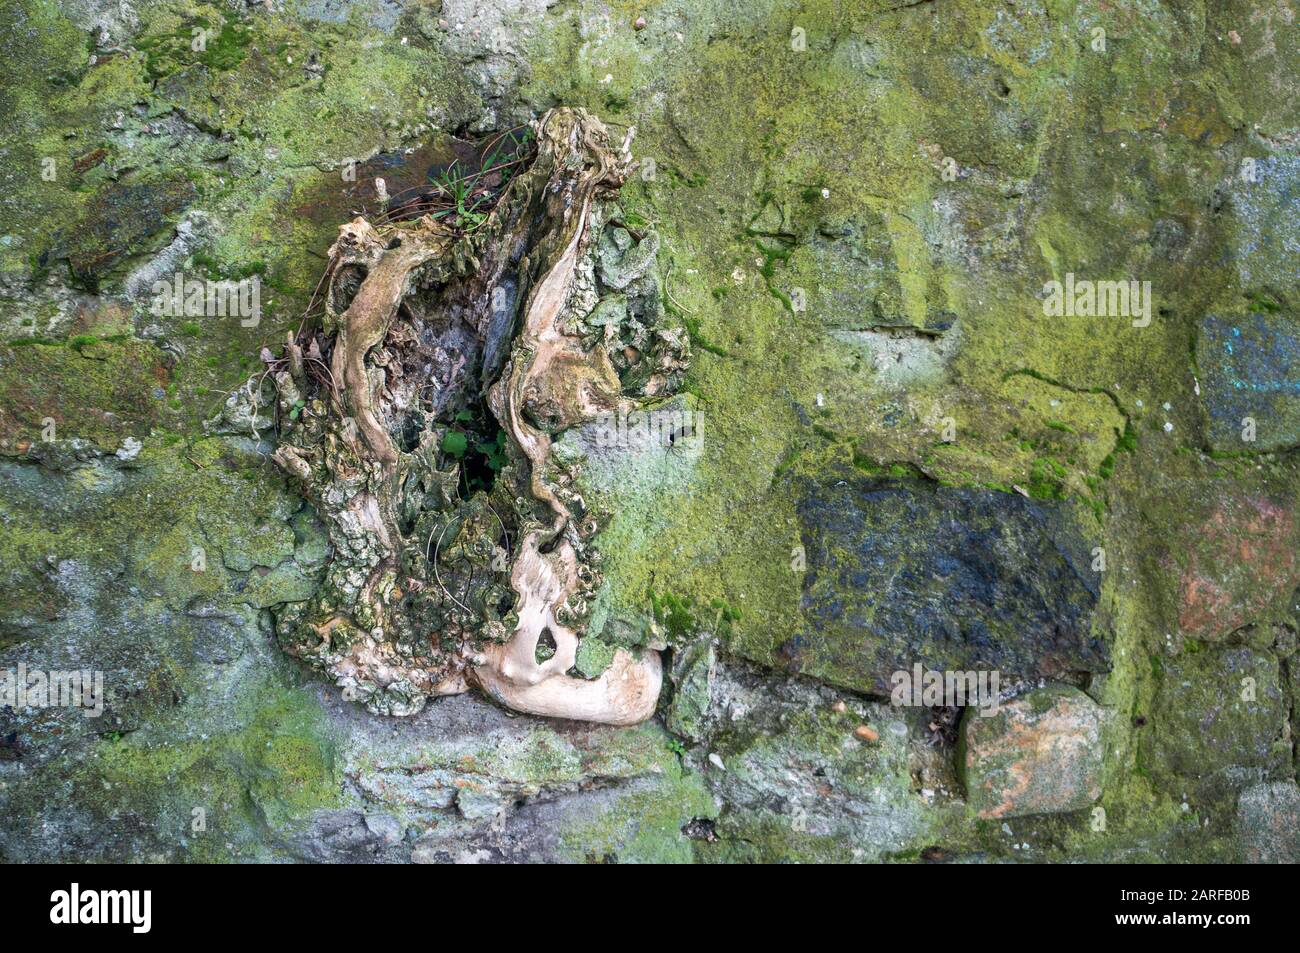 Alte, offene Baumwurzel, die durch rustikale Steinwände bricht, die mit grünem Moos und Algen bedeckt sind Stockfoto